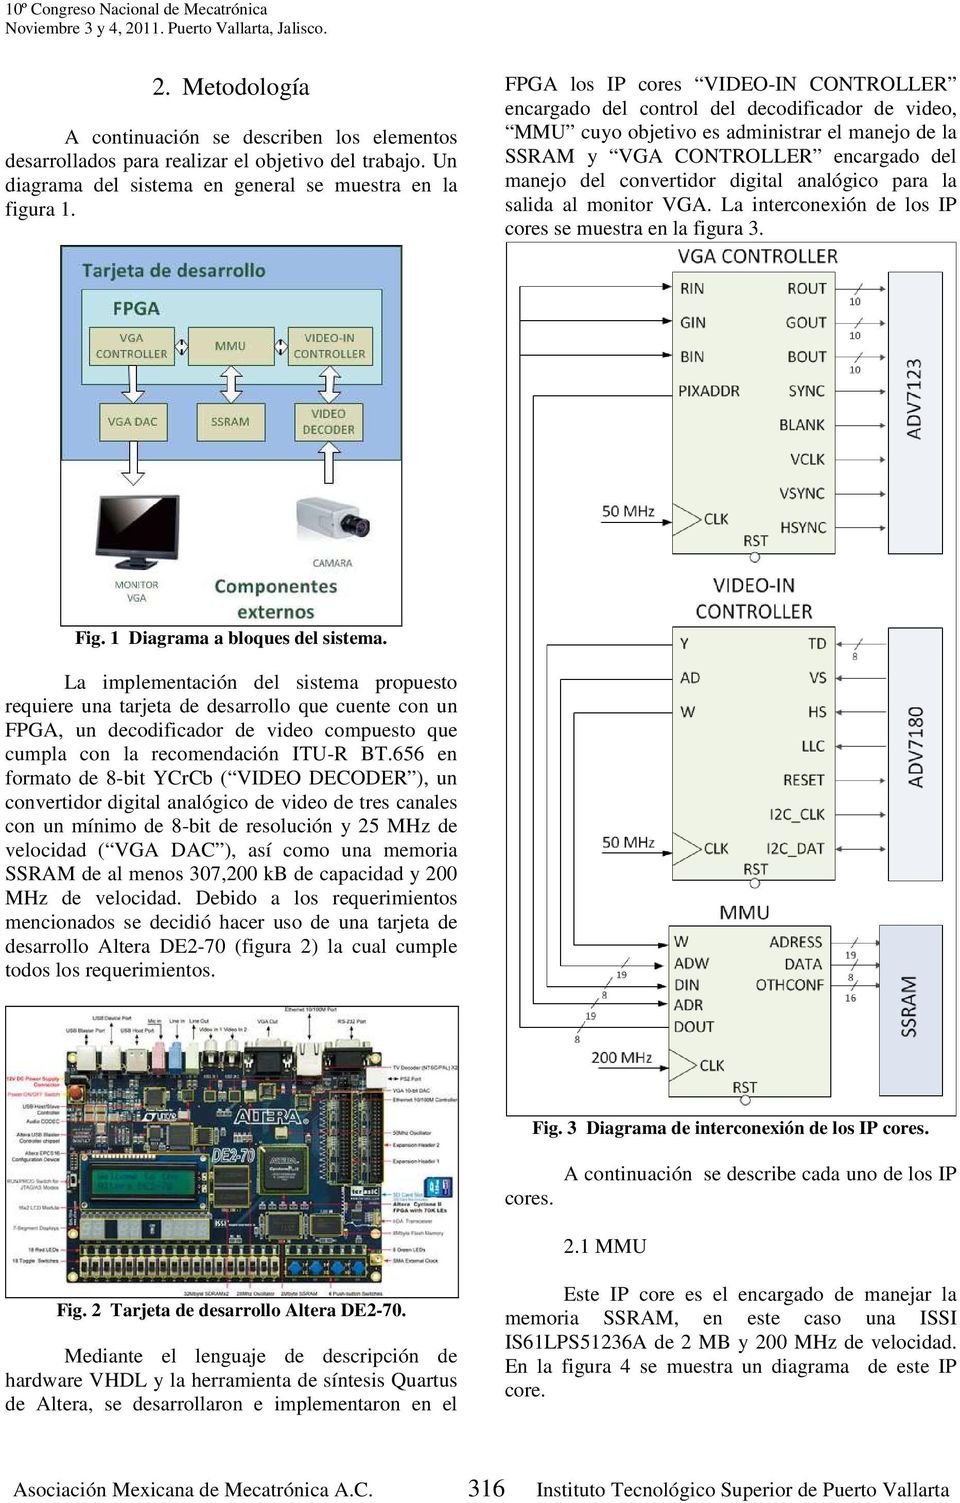 digital analógico para la salida al monitor VGA. La interconexión de los IP cores se muestra en la figura 3. Fig. 1 Diagrama a bloques del sistema.